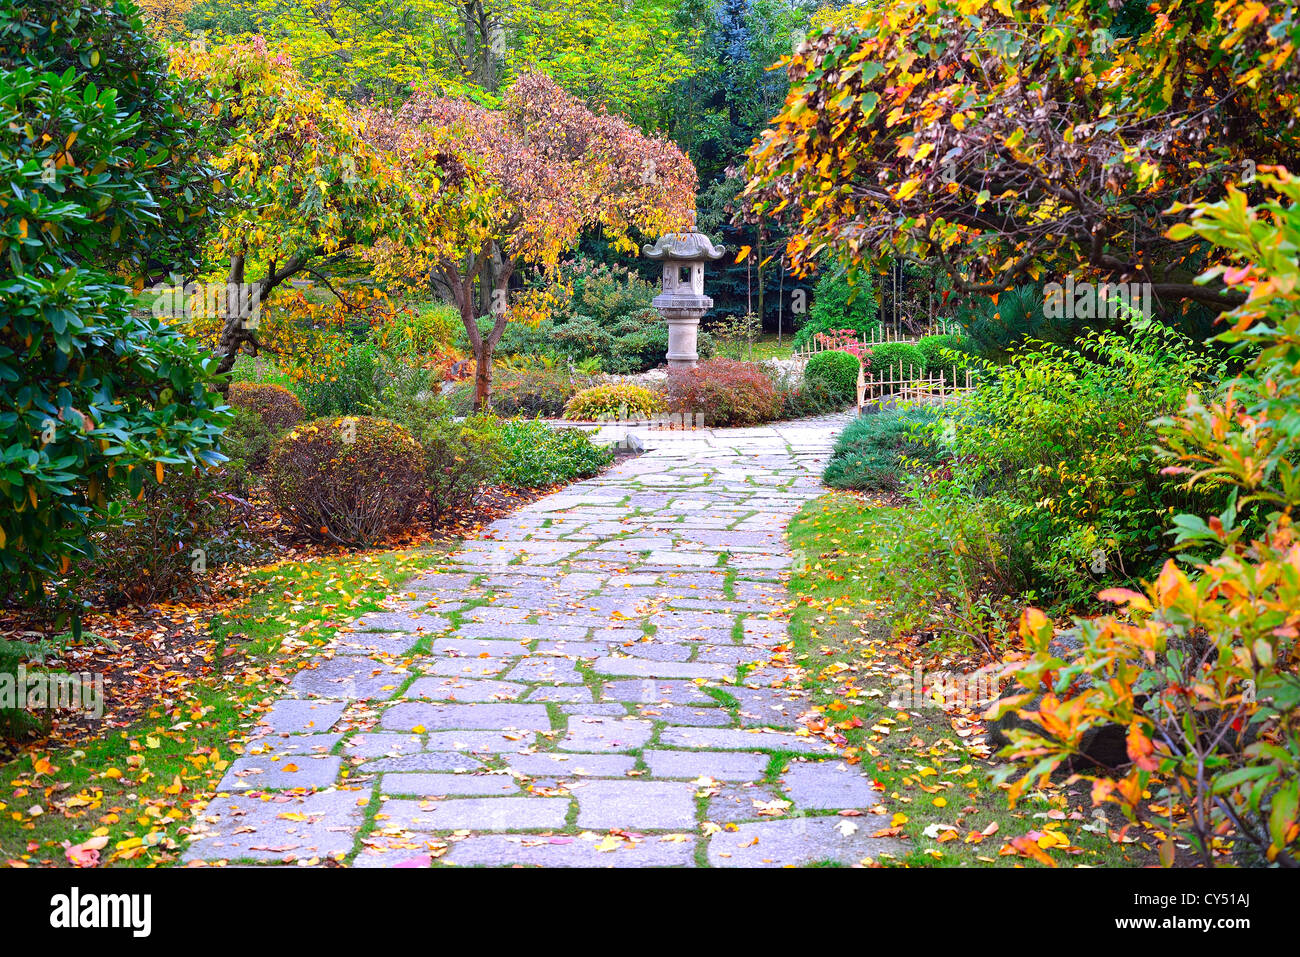 Couleurs d'automne jardin japonais de Basse-silésie Wroclaw Pologne Banque D'Images